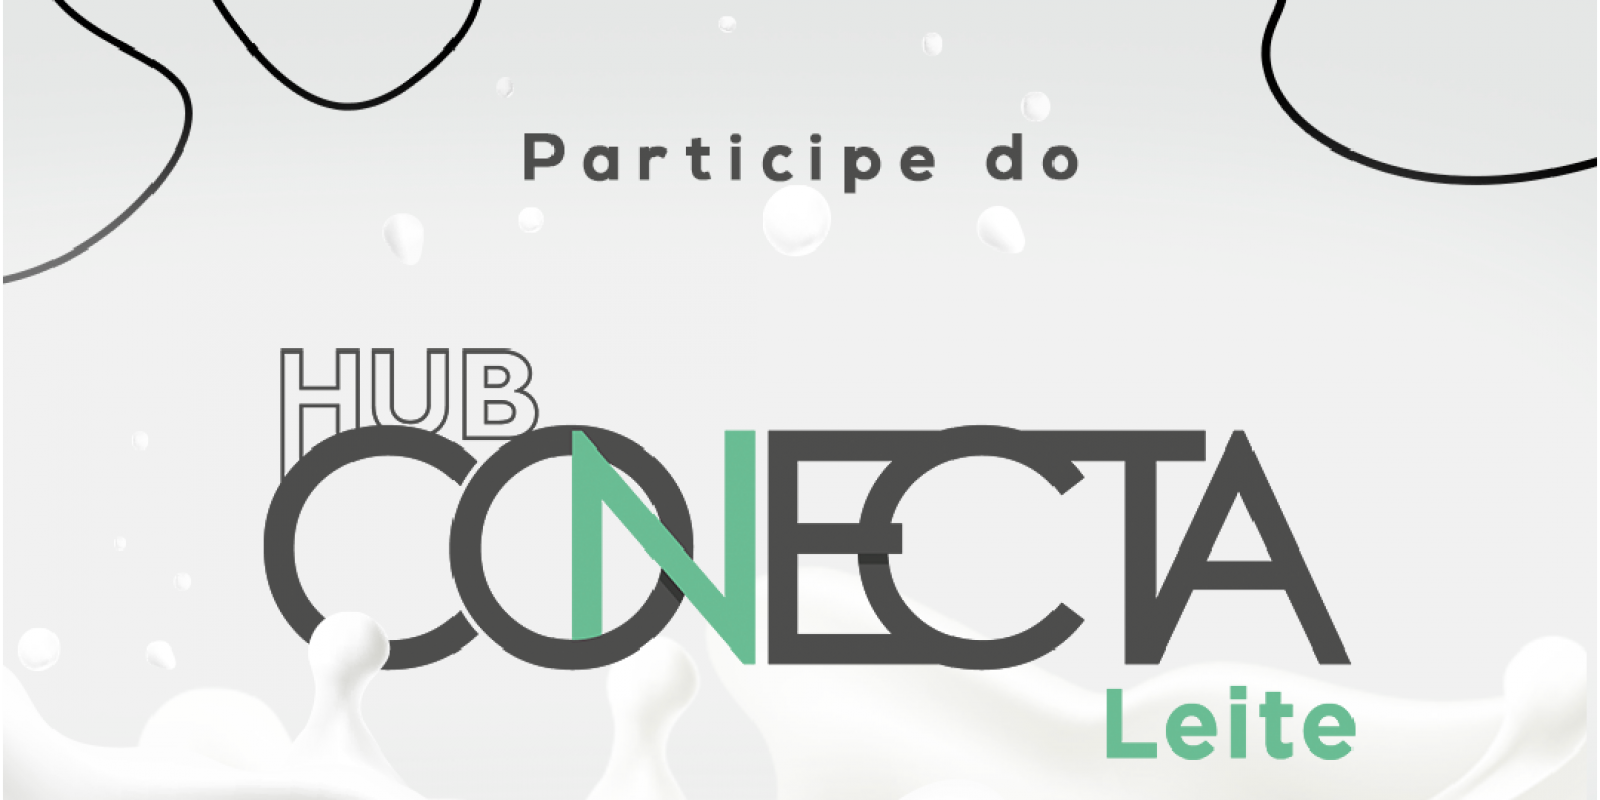 Hub Conecta Leite aproxima empresas, startups e pesquisadores